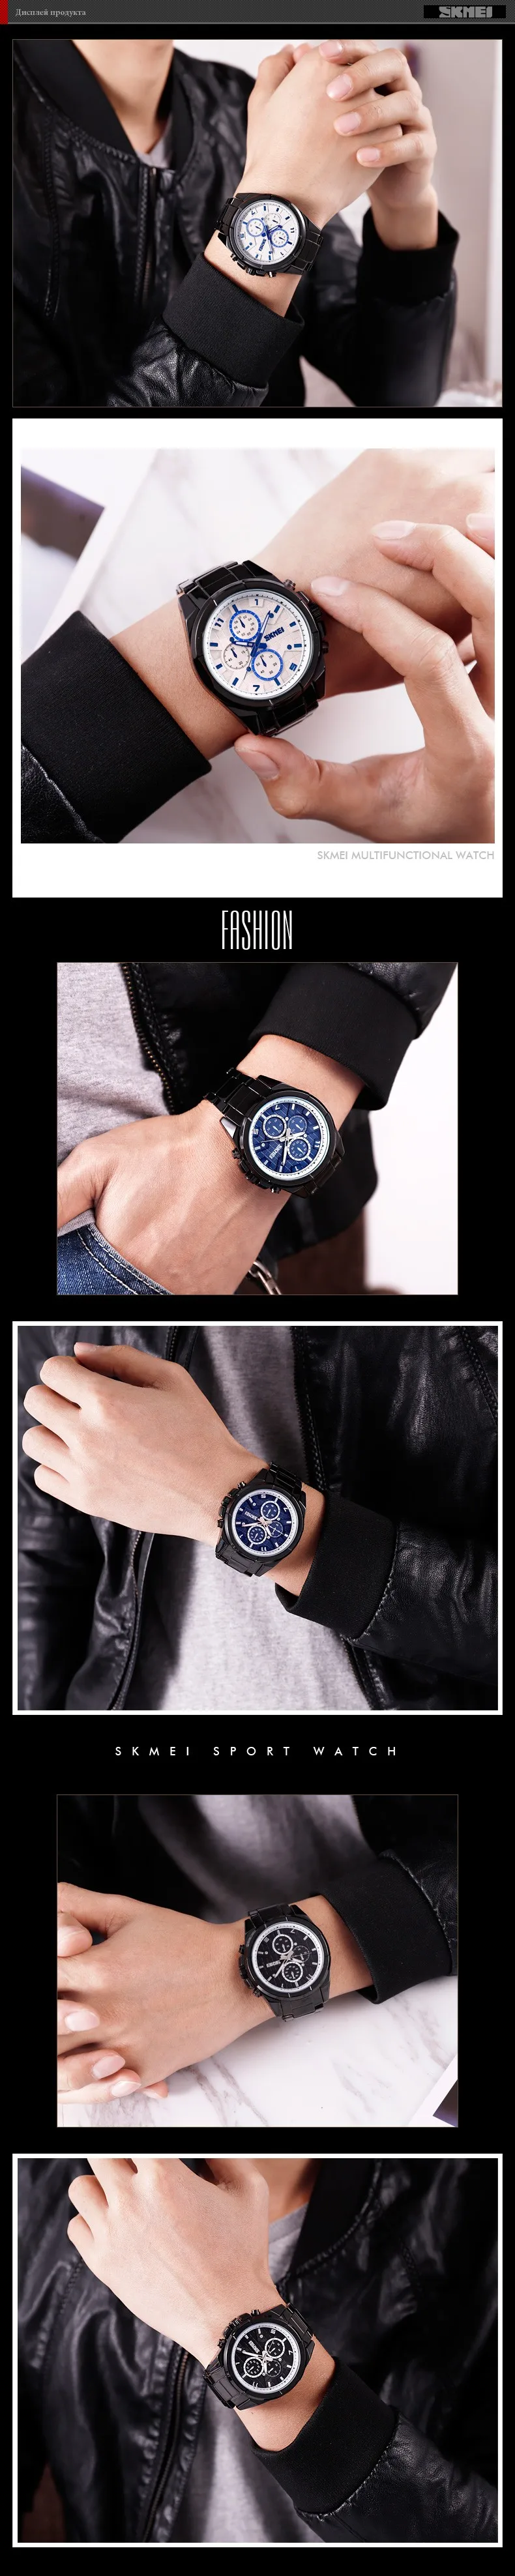 SKMEI модные умные часы мужские наручные часы водостойкие Bluetooth умные часы расчет калорий мужские часы relogio masculino 1461